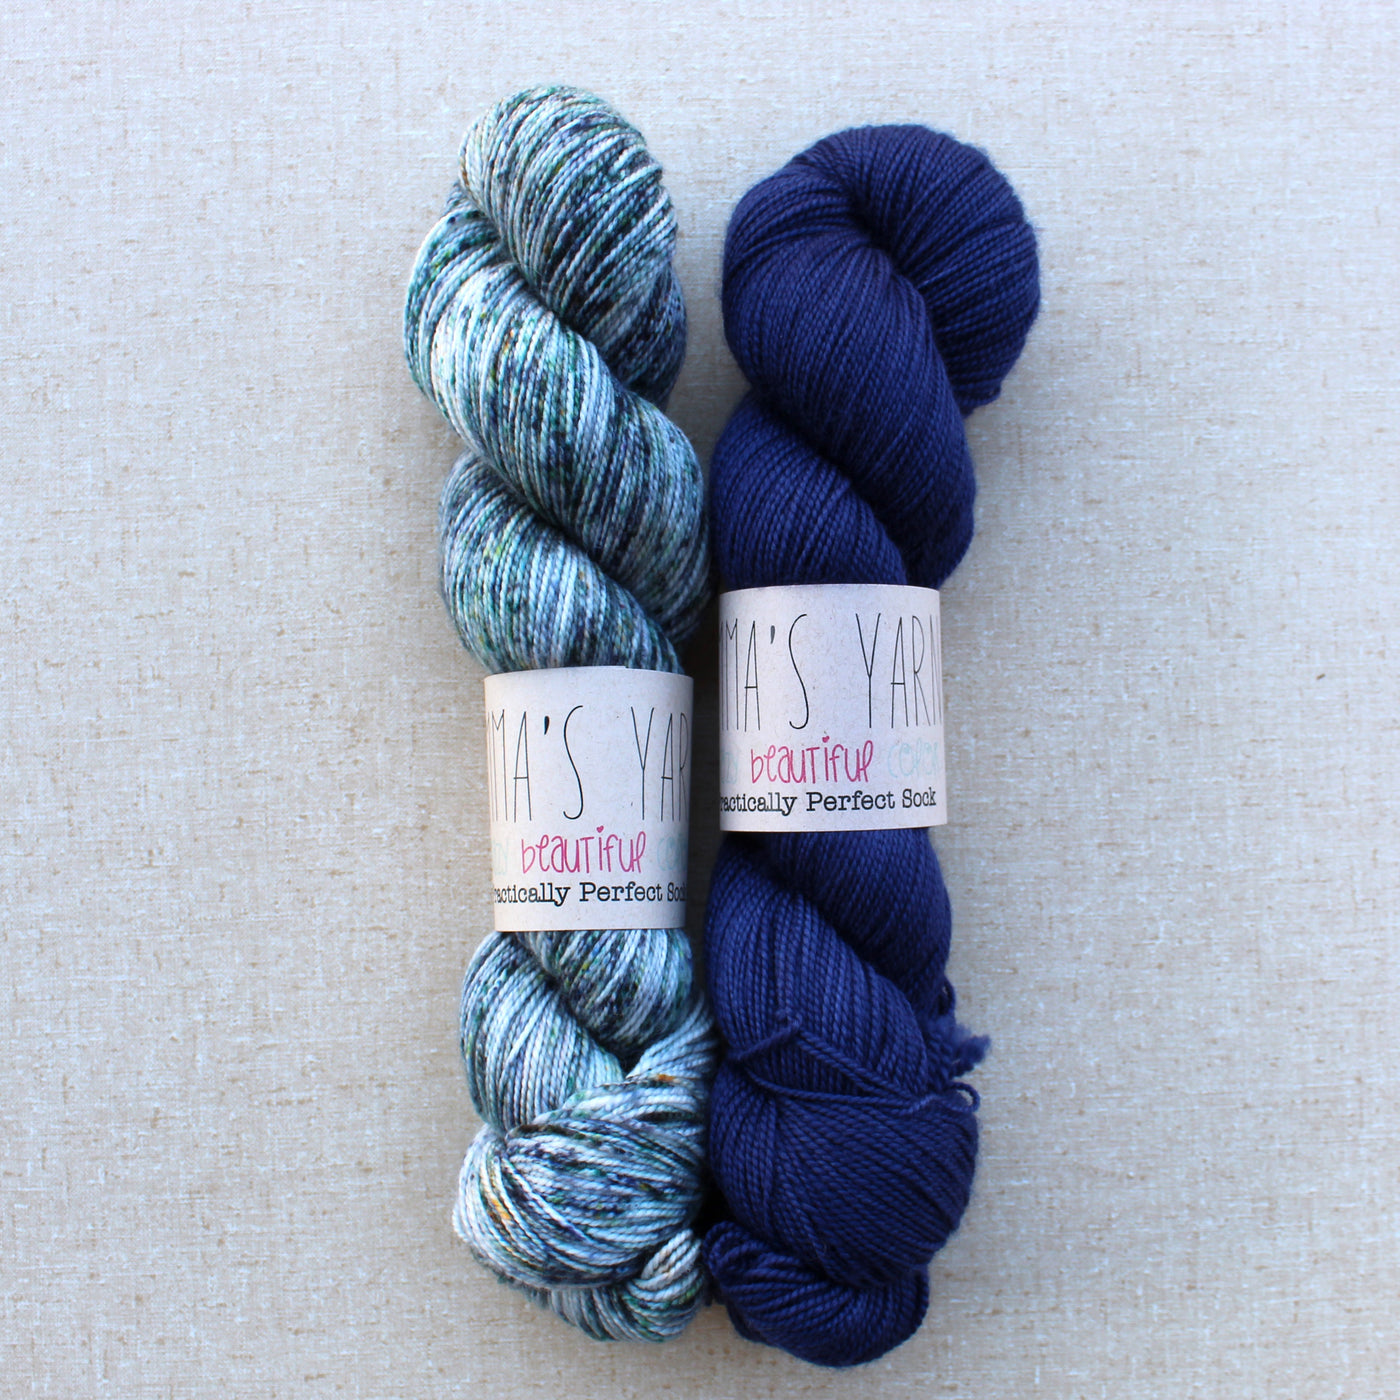 Casapinka Local Yarn Cowl Kit (Yarn Husband / Navy Blazer)